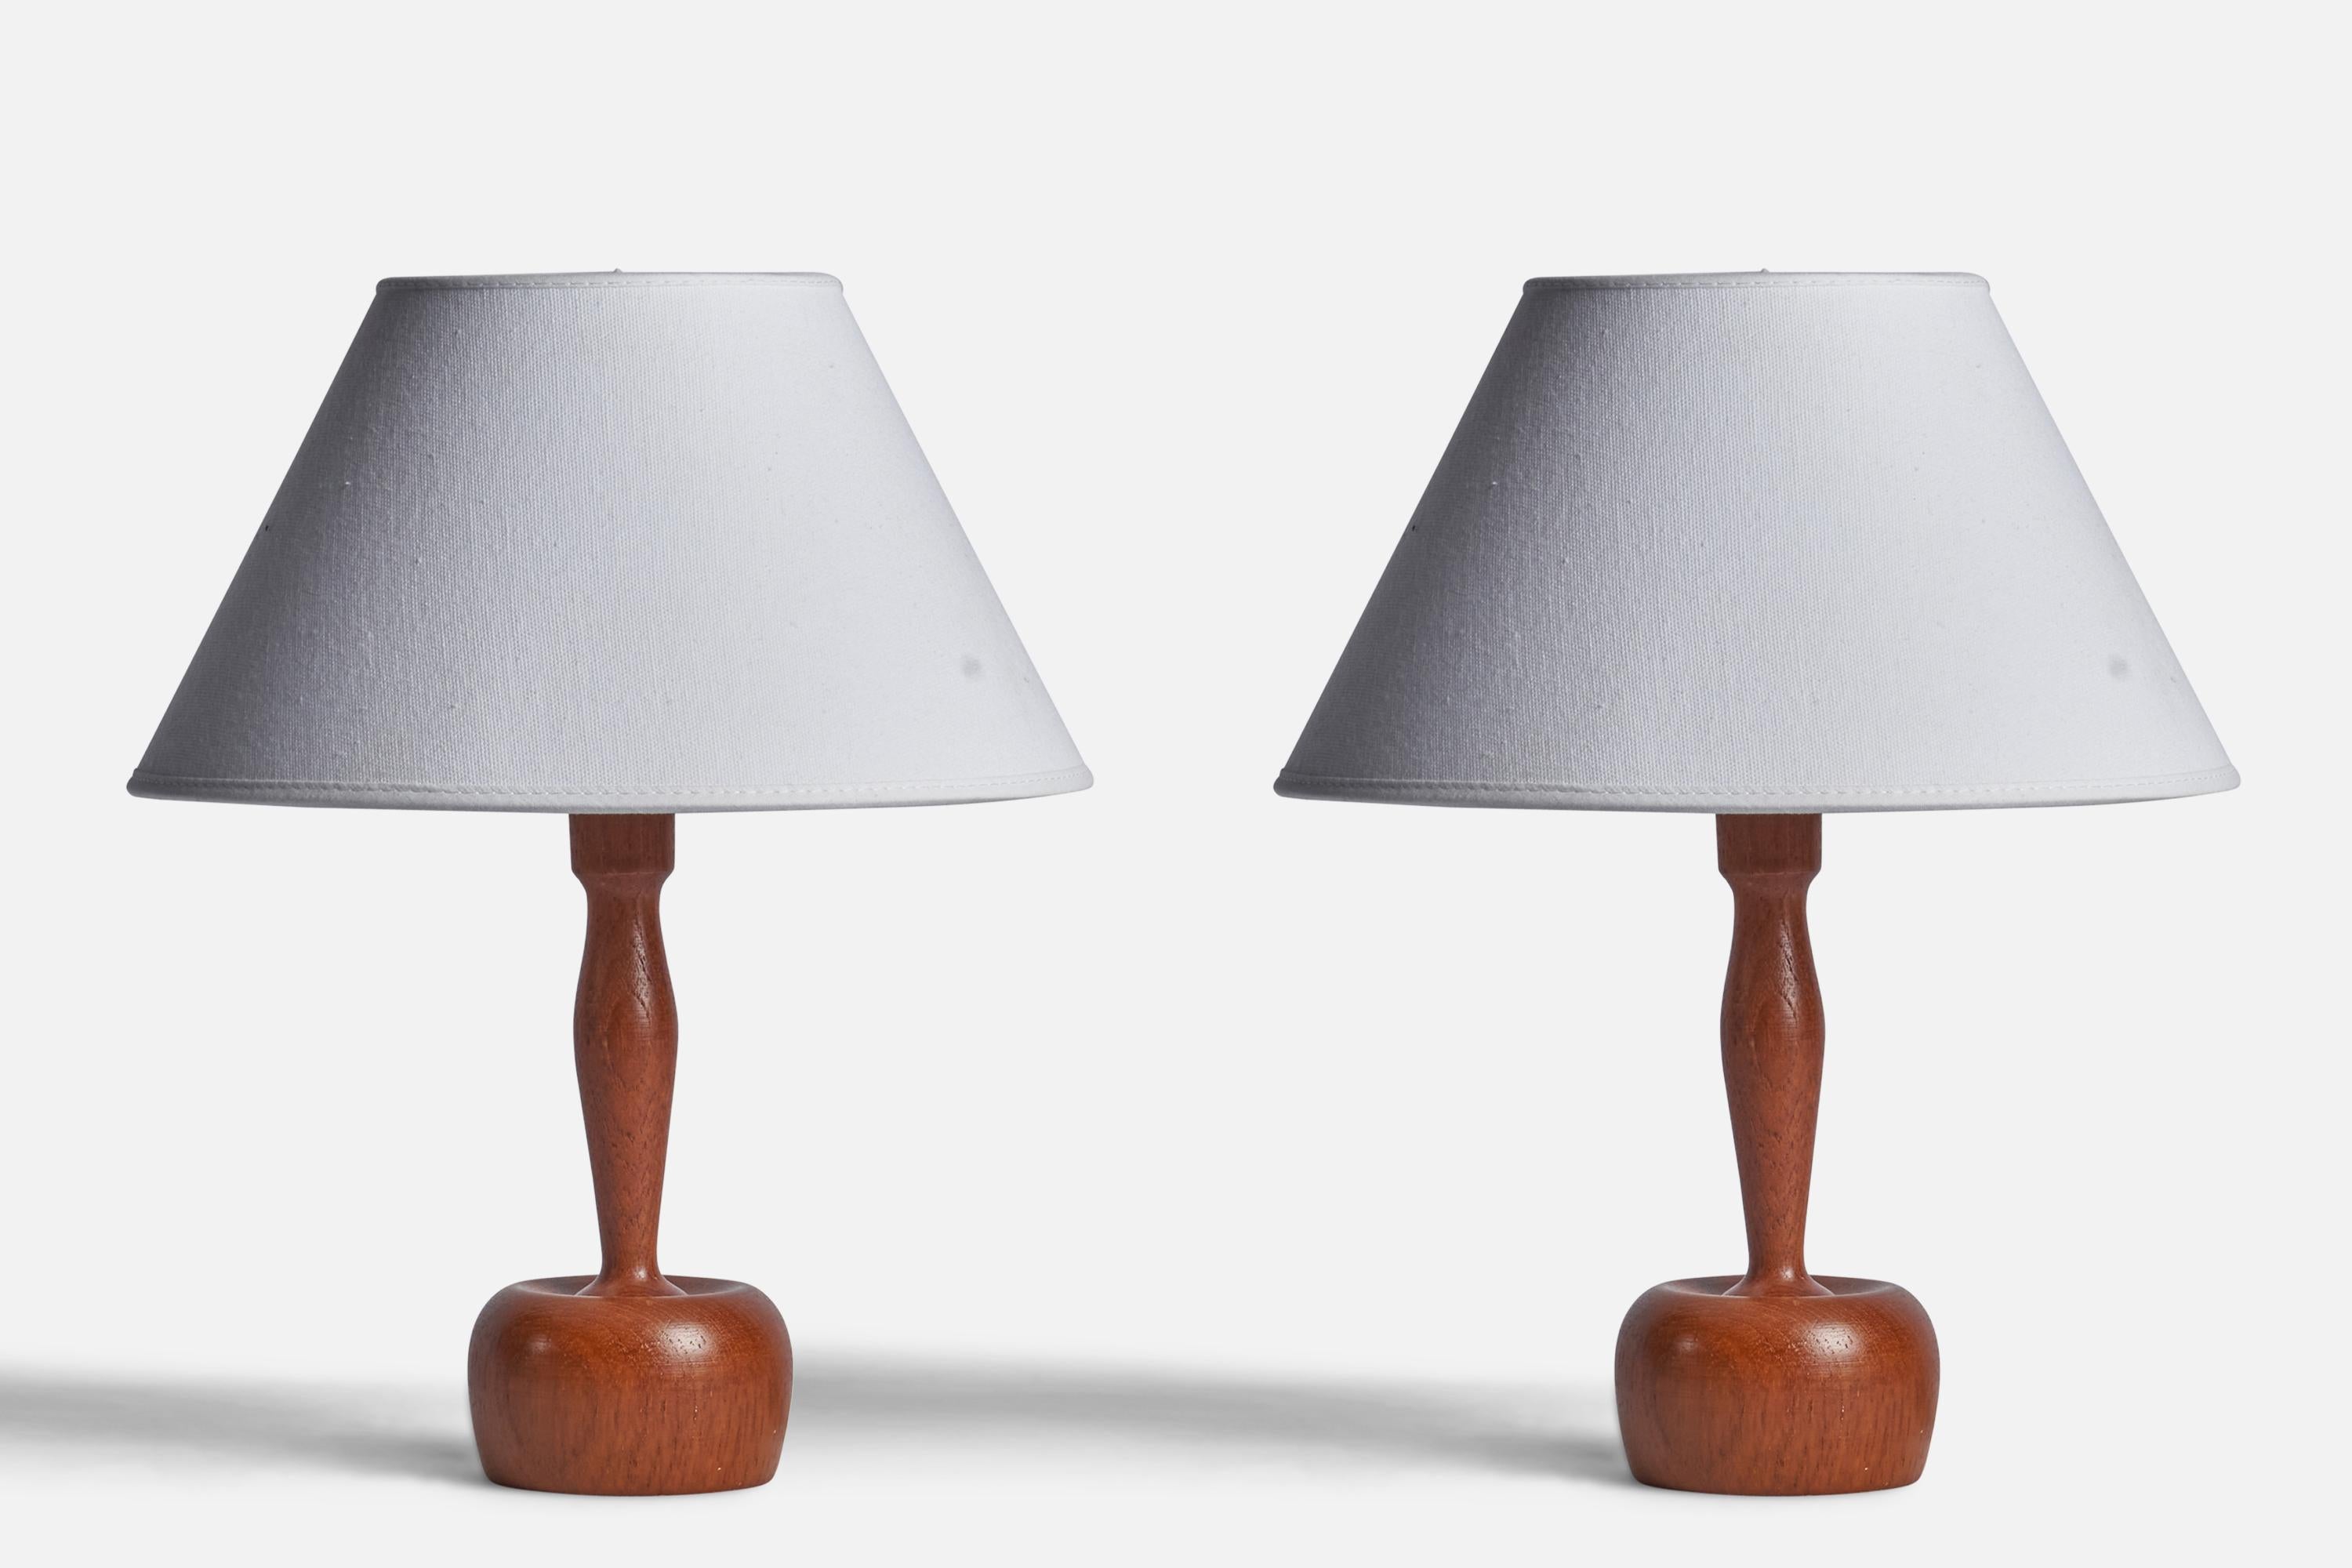 Paire de lampes de table en teck tourné conçues et produites par Markslöjd, Kinna, Suède, années 1960.

Dimensions de la lampe (pouces) : 9.25